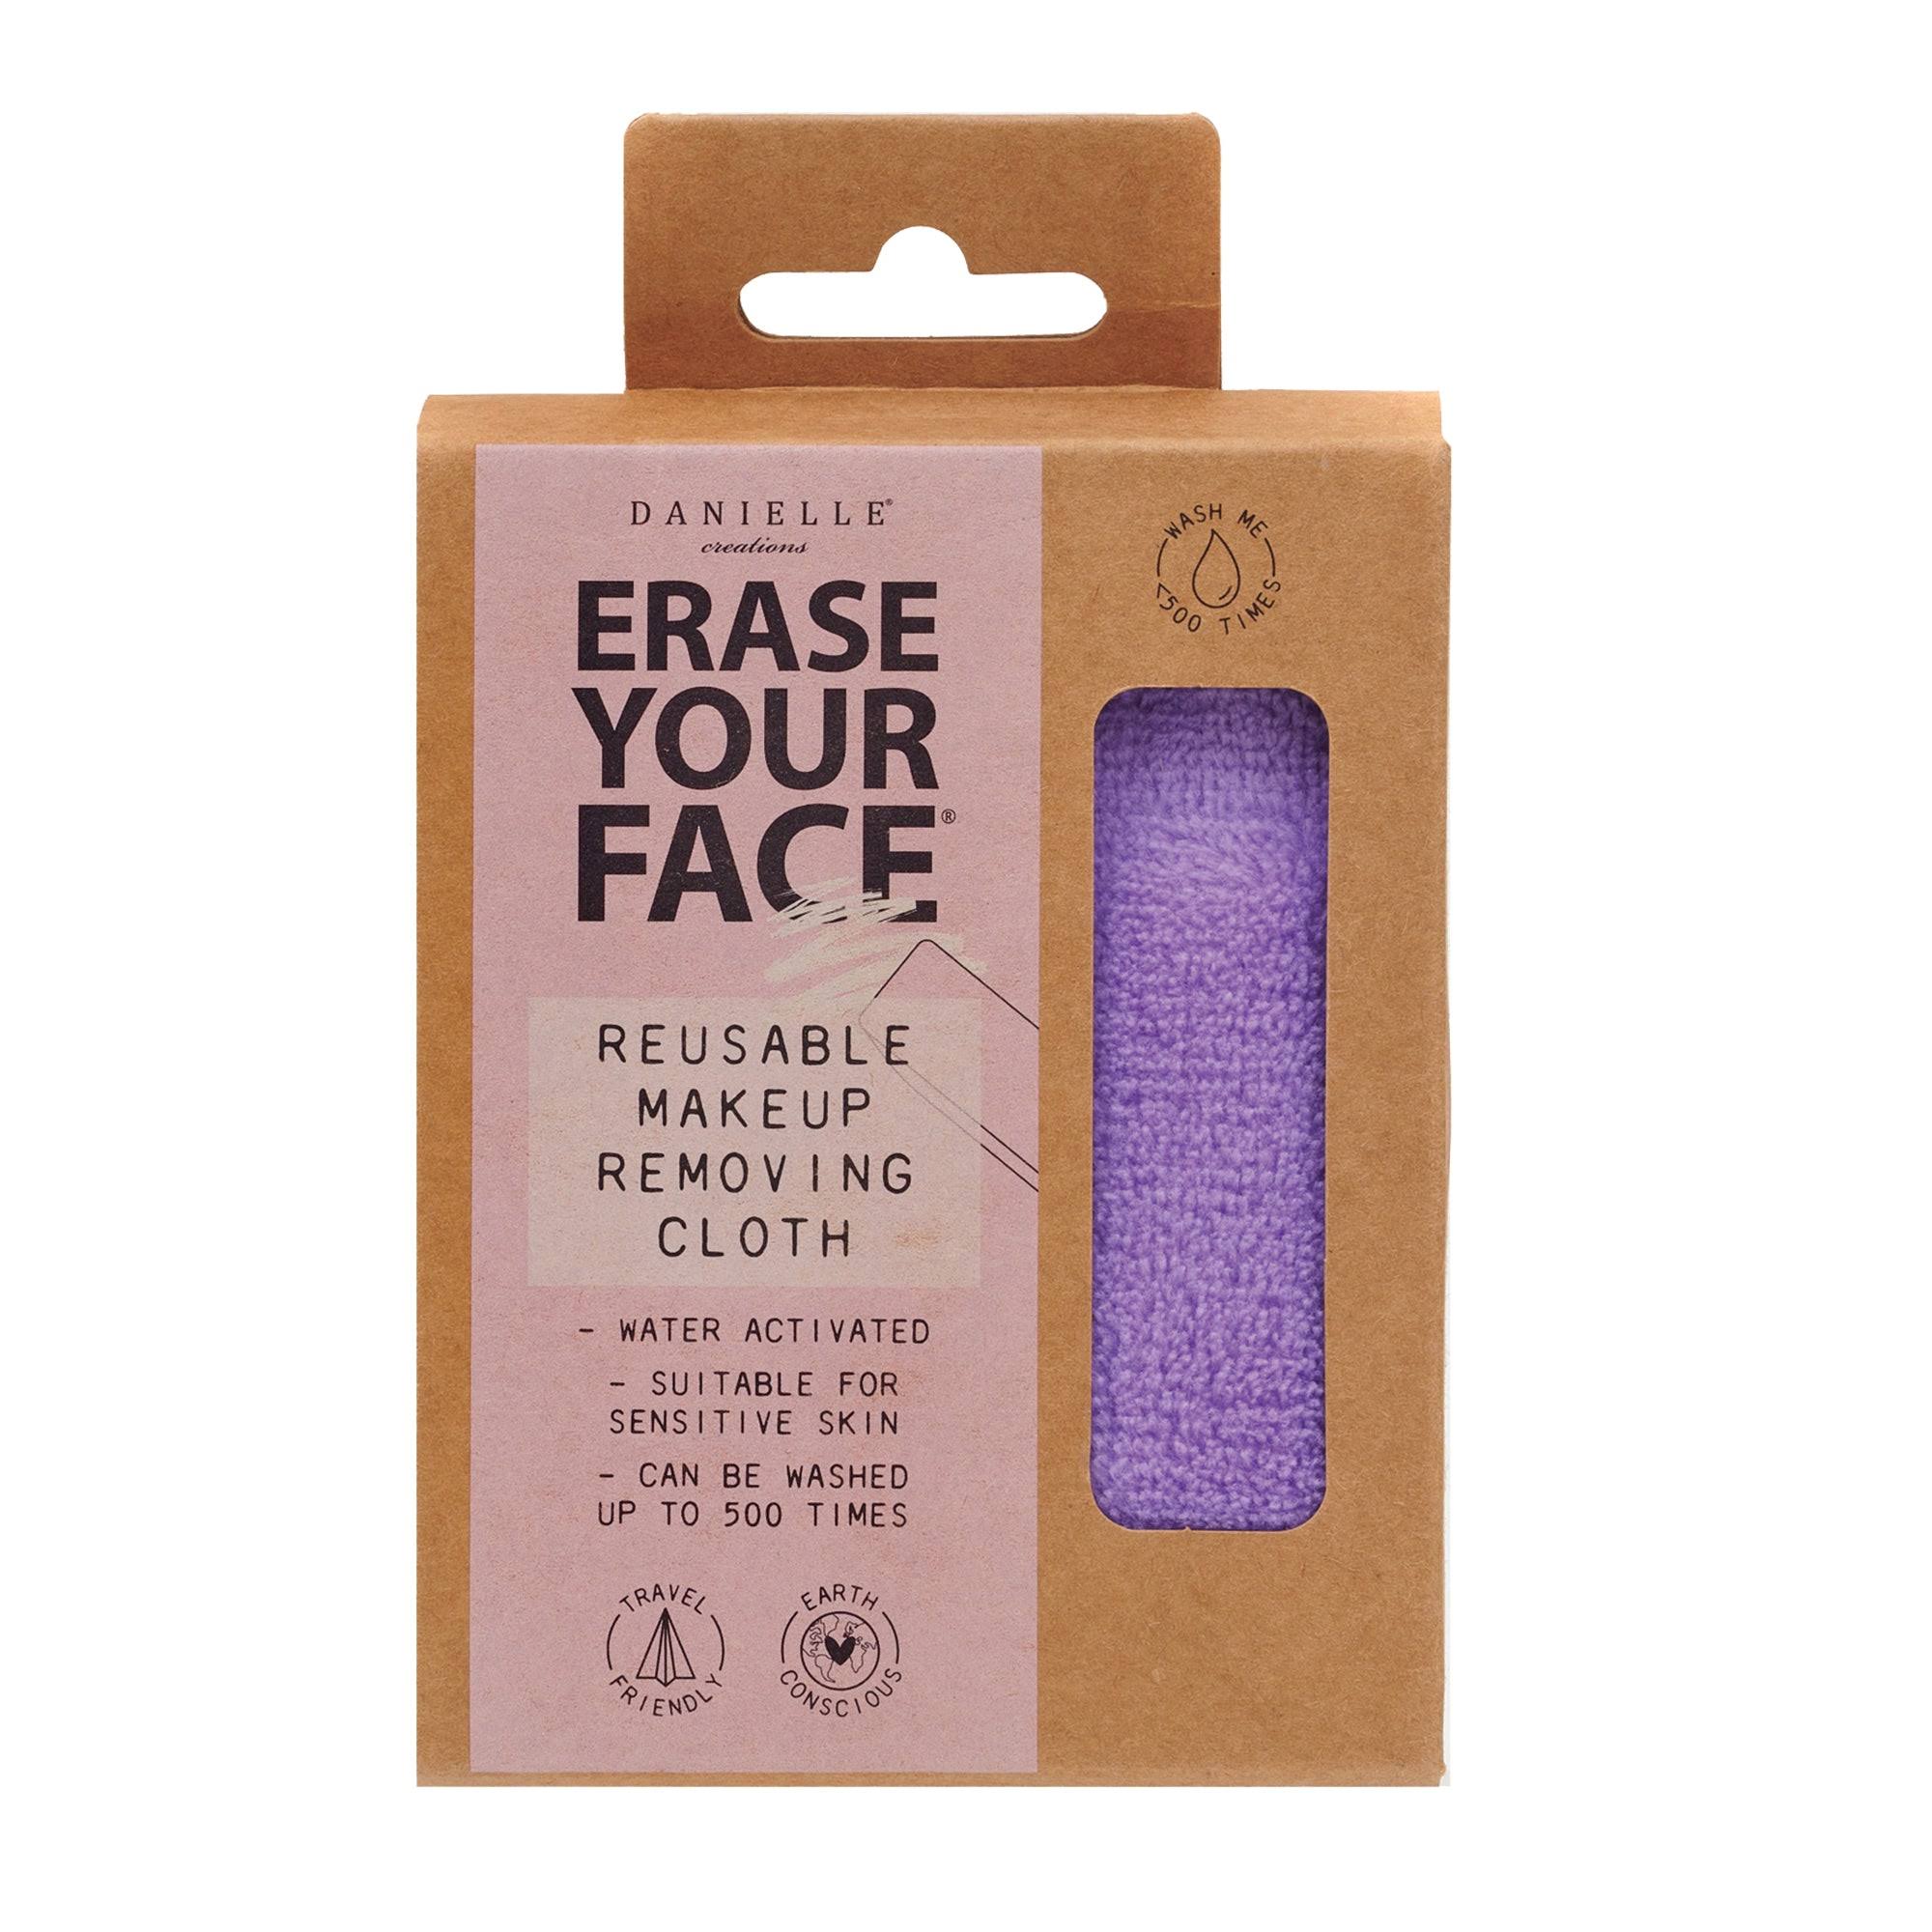 Danielle Erase Your Face Reusable Makeup Removing Cloth - Purple